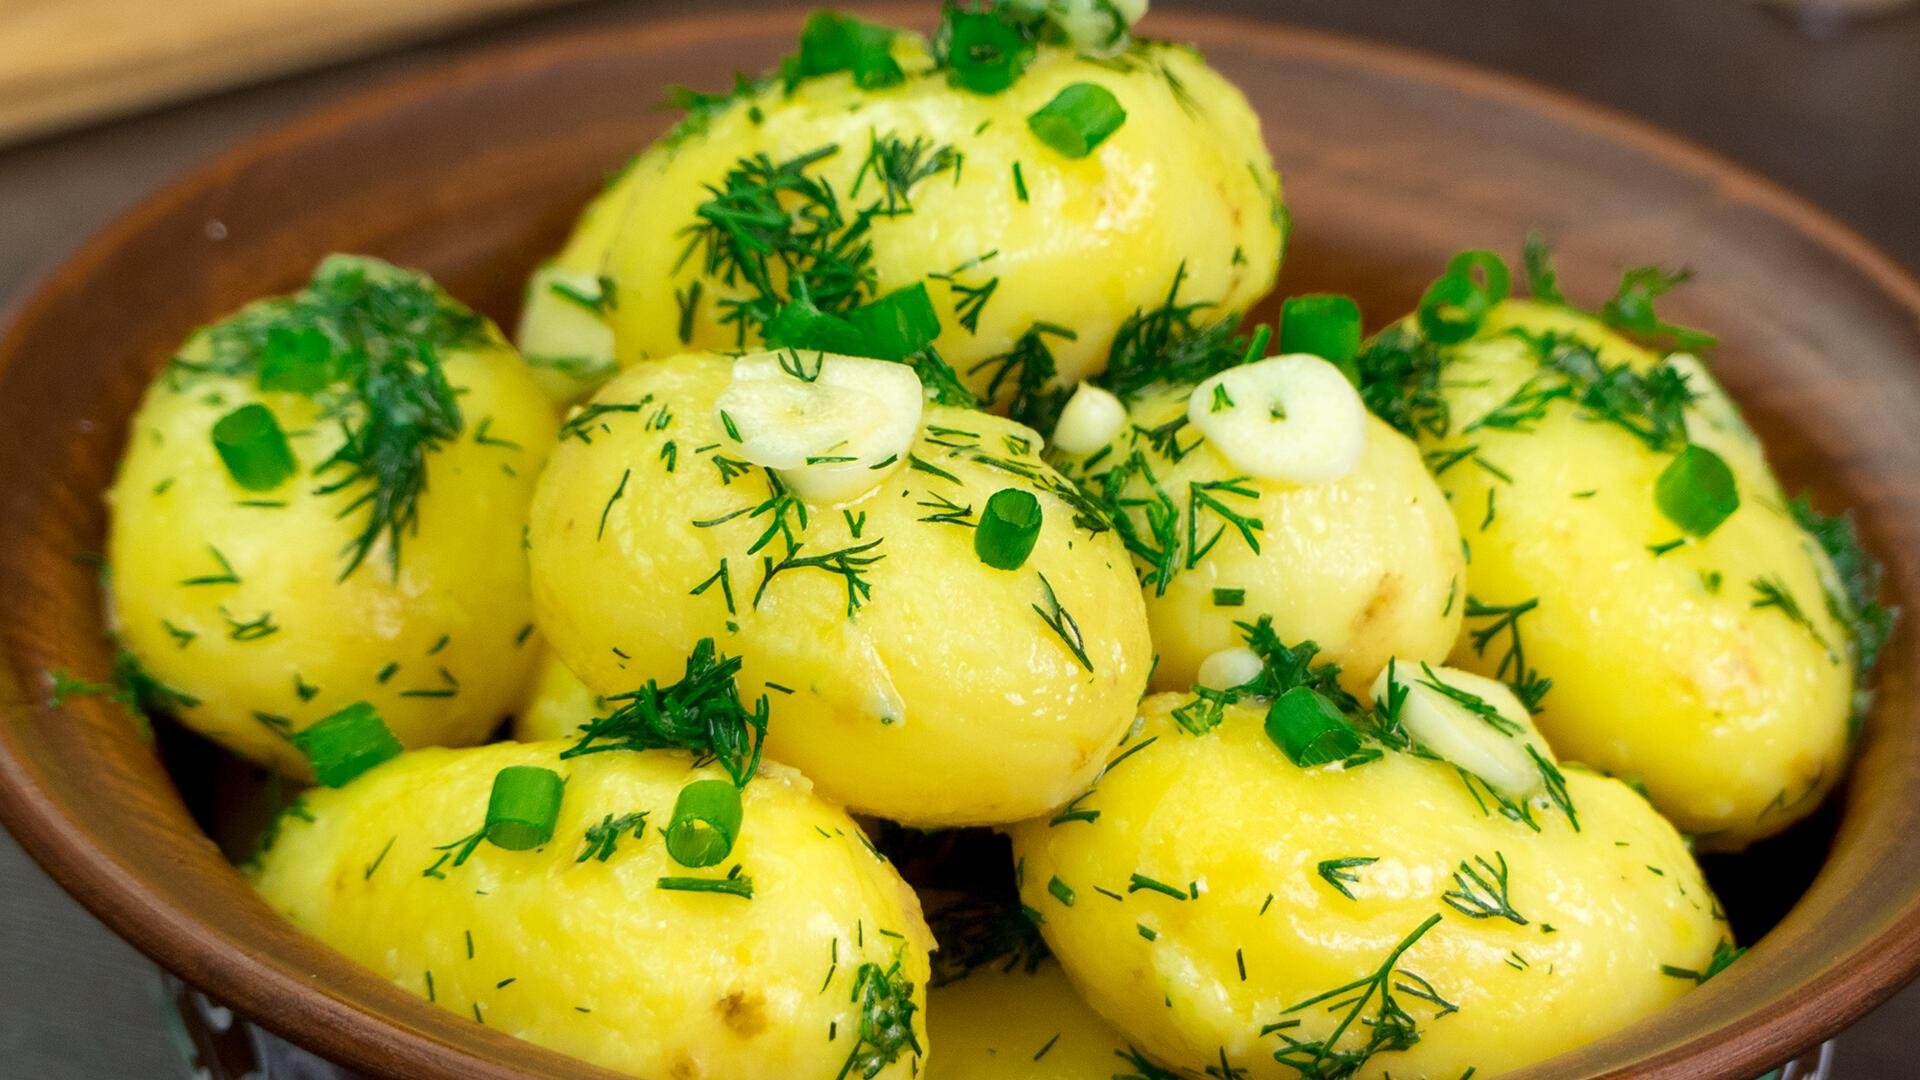 Катопля. Вареная картошка. Картофель отварной с зеленью. Отварная картошка с укропом. Картошка с зеленью и маслом.